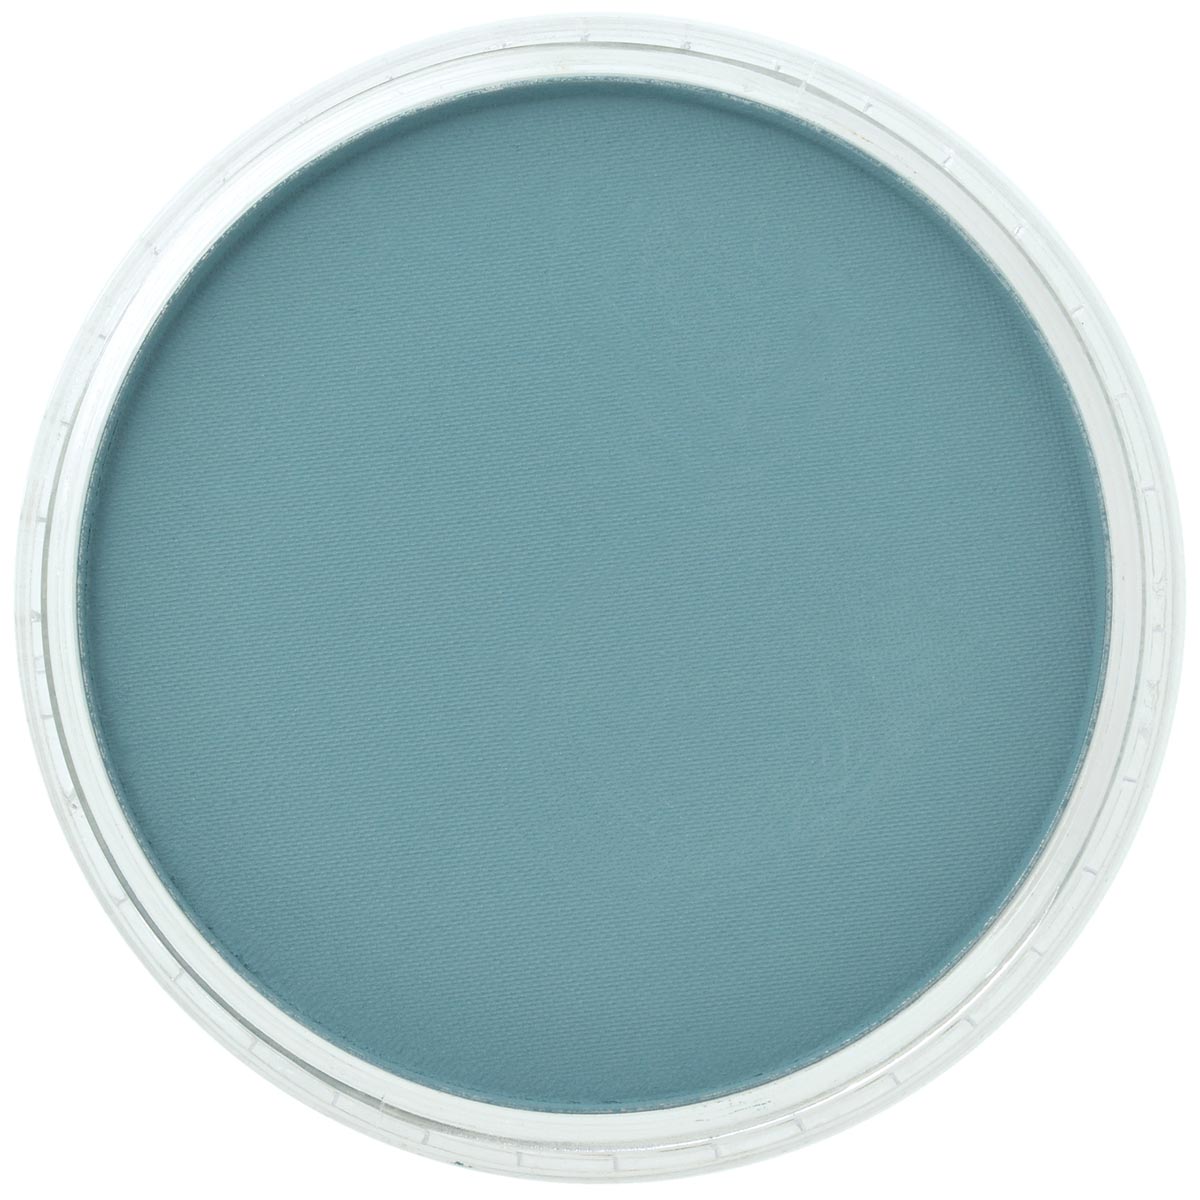 Pan Pastel Turquoise Shade 580.3